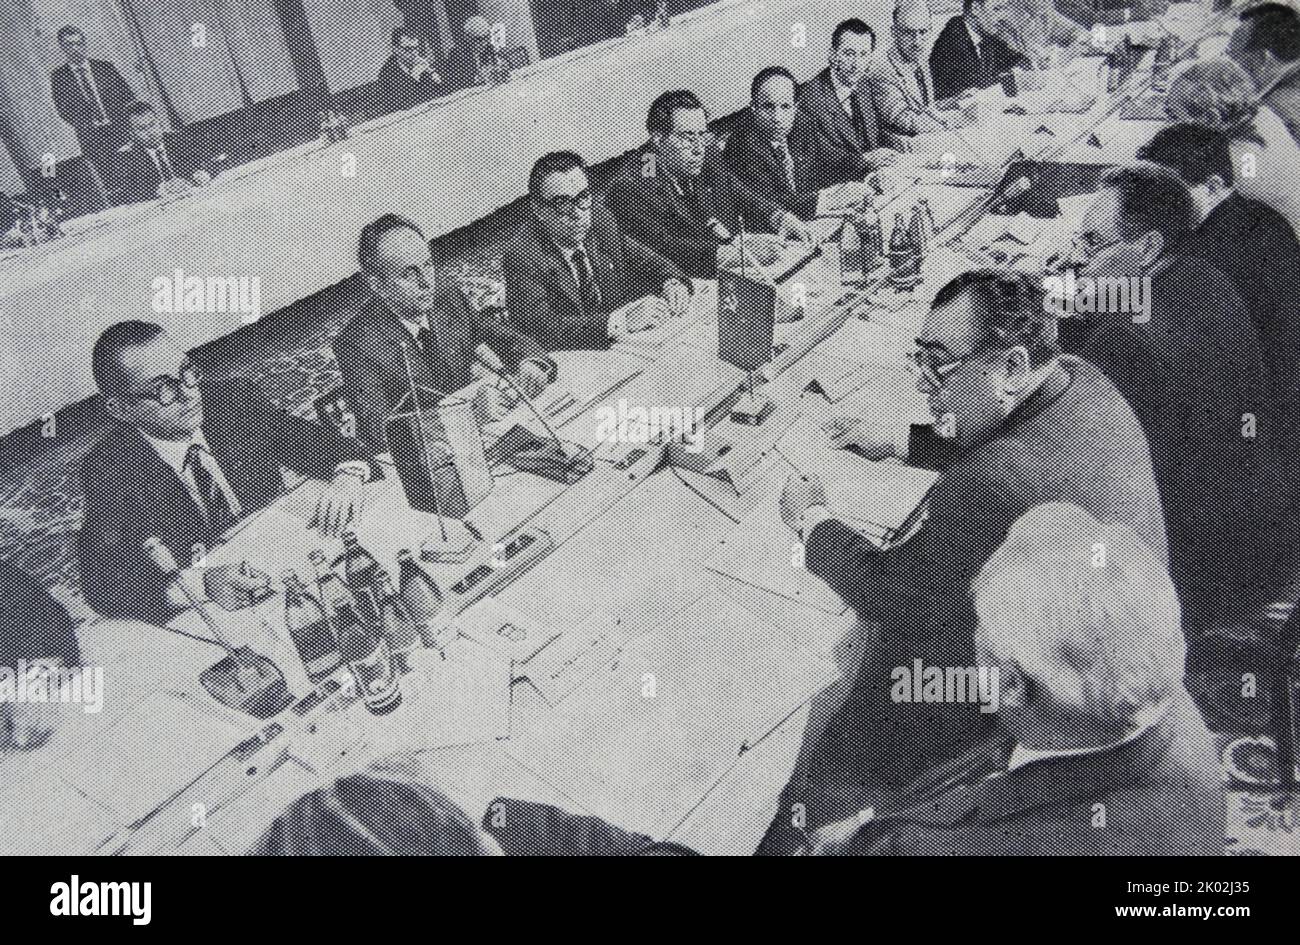 XXXII réunion de la Commission intergouvernementale pour la coopération économique, scientifique et technique entre l'URSS et la RDA. Moscou, 1983 Banque D'Images